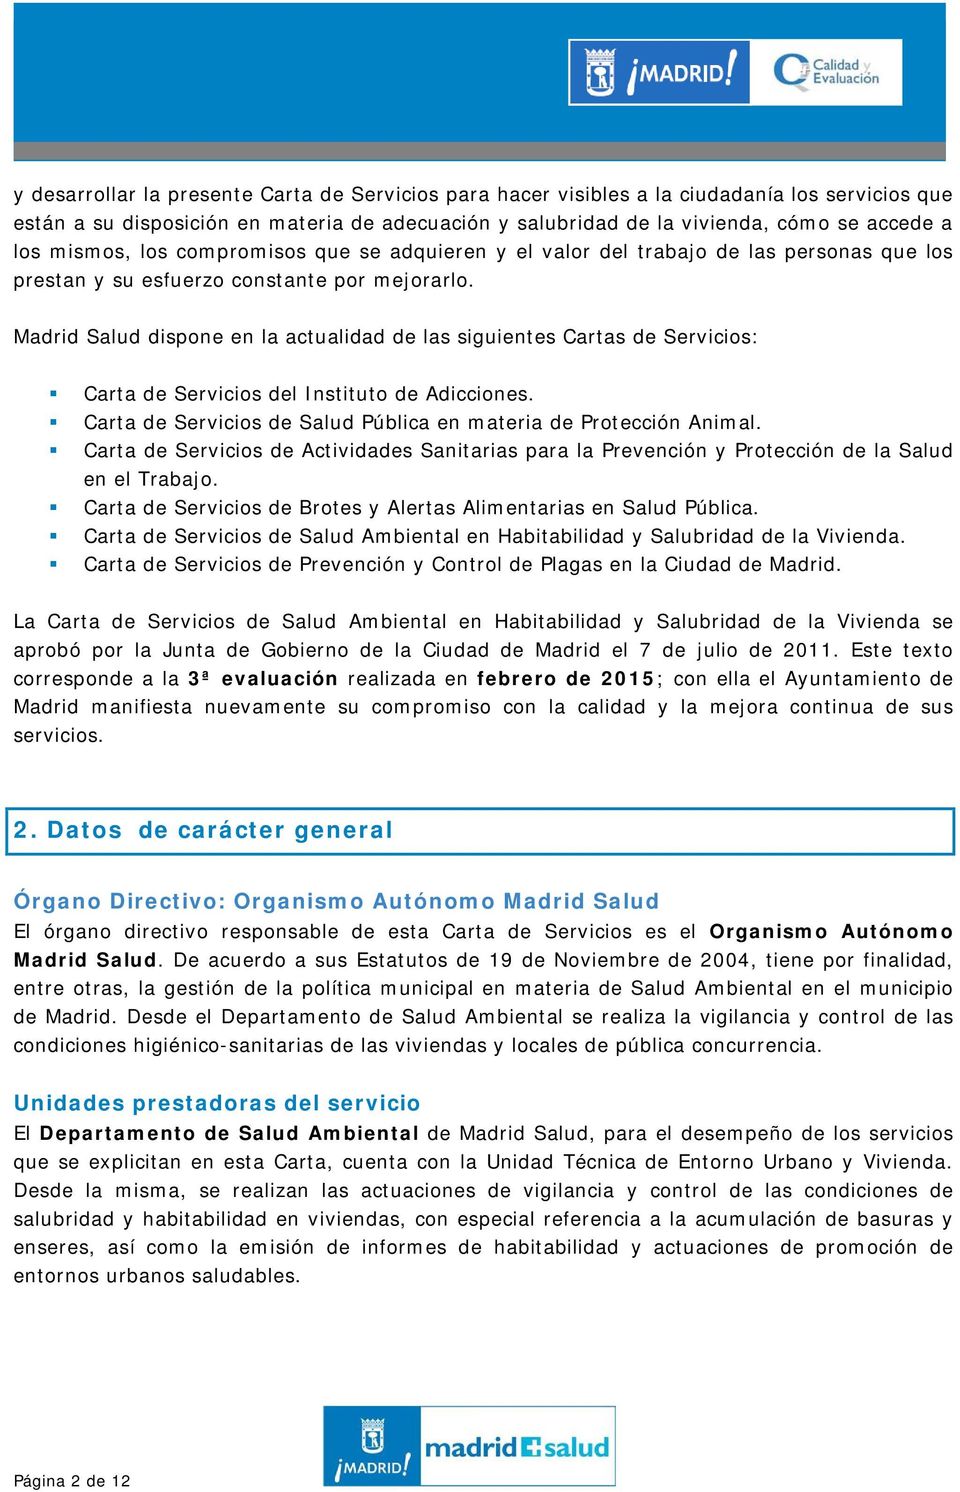 Madrid Salud dispone en la actualidad de las siguientes Cartas de Servicios: Carta de Servicios del Instituto de Adicciones. Carta de Servicios de Salud Pública en materia de Protección Animal.